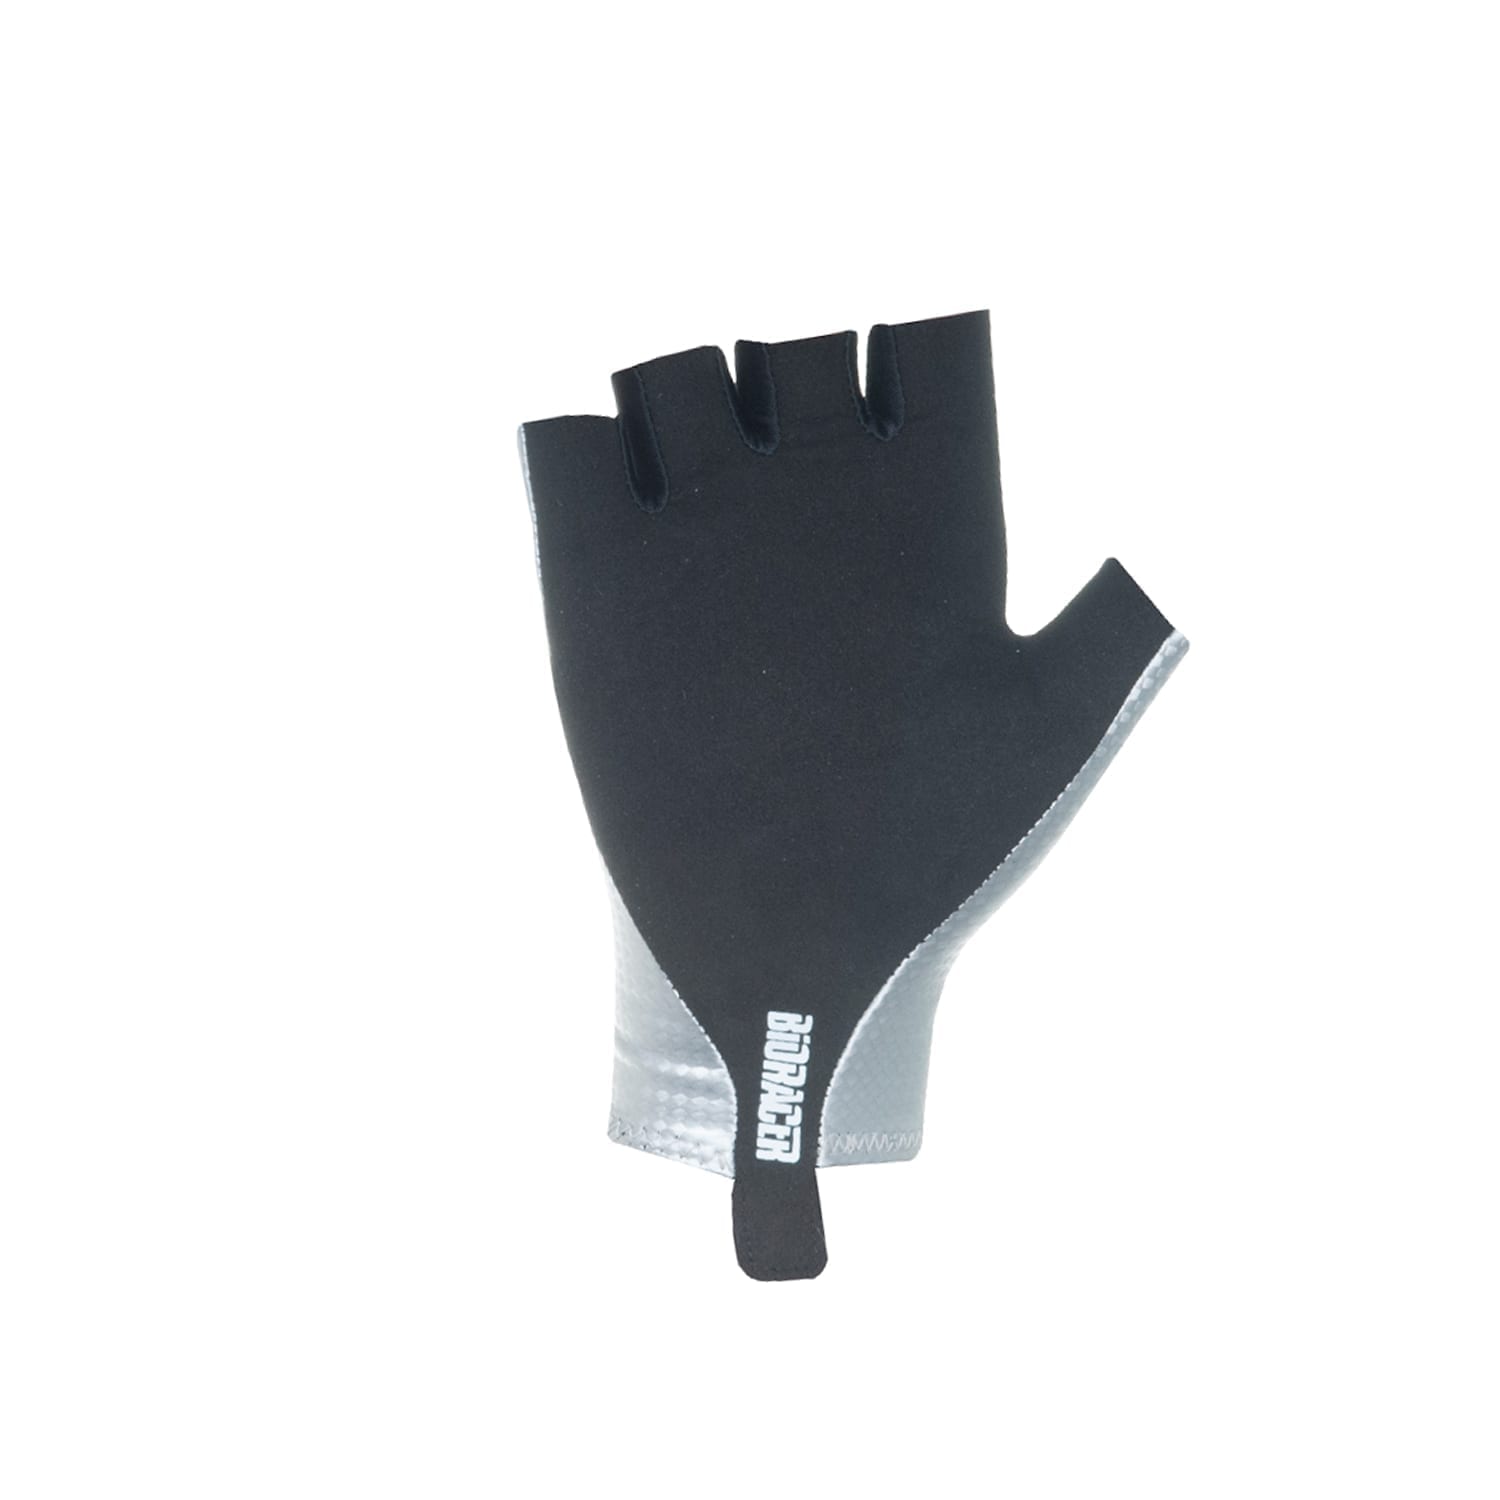 Speedwear Concept TT Glove Silver